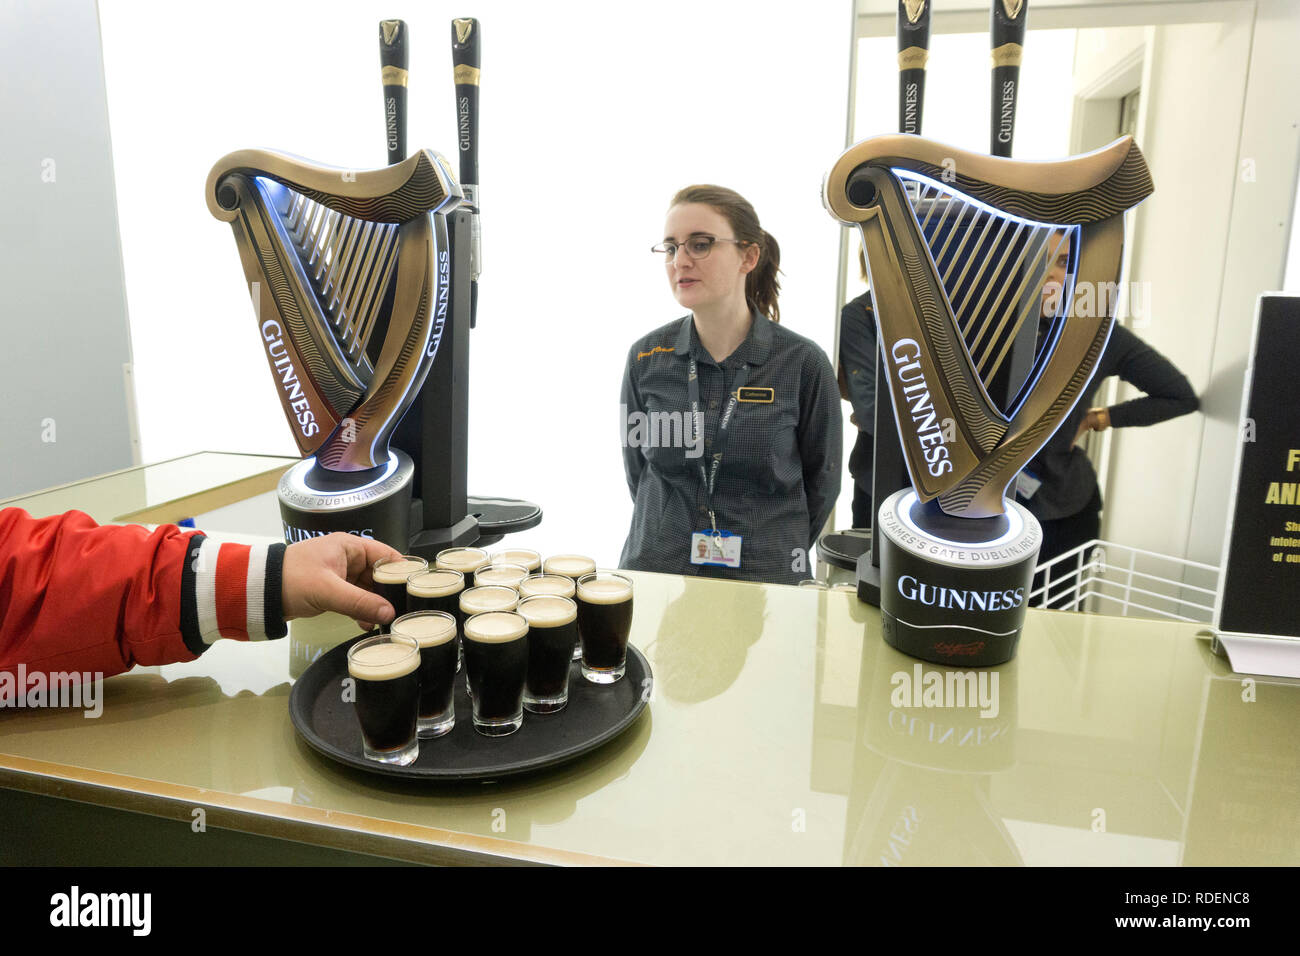 Imparare a bere Guinness presso il Magazzino Guinness Brewery a Dublino, Irlanda, 15 gen 2019. Foto Stock